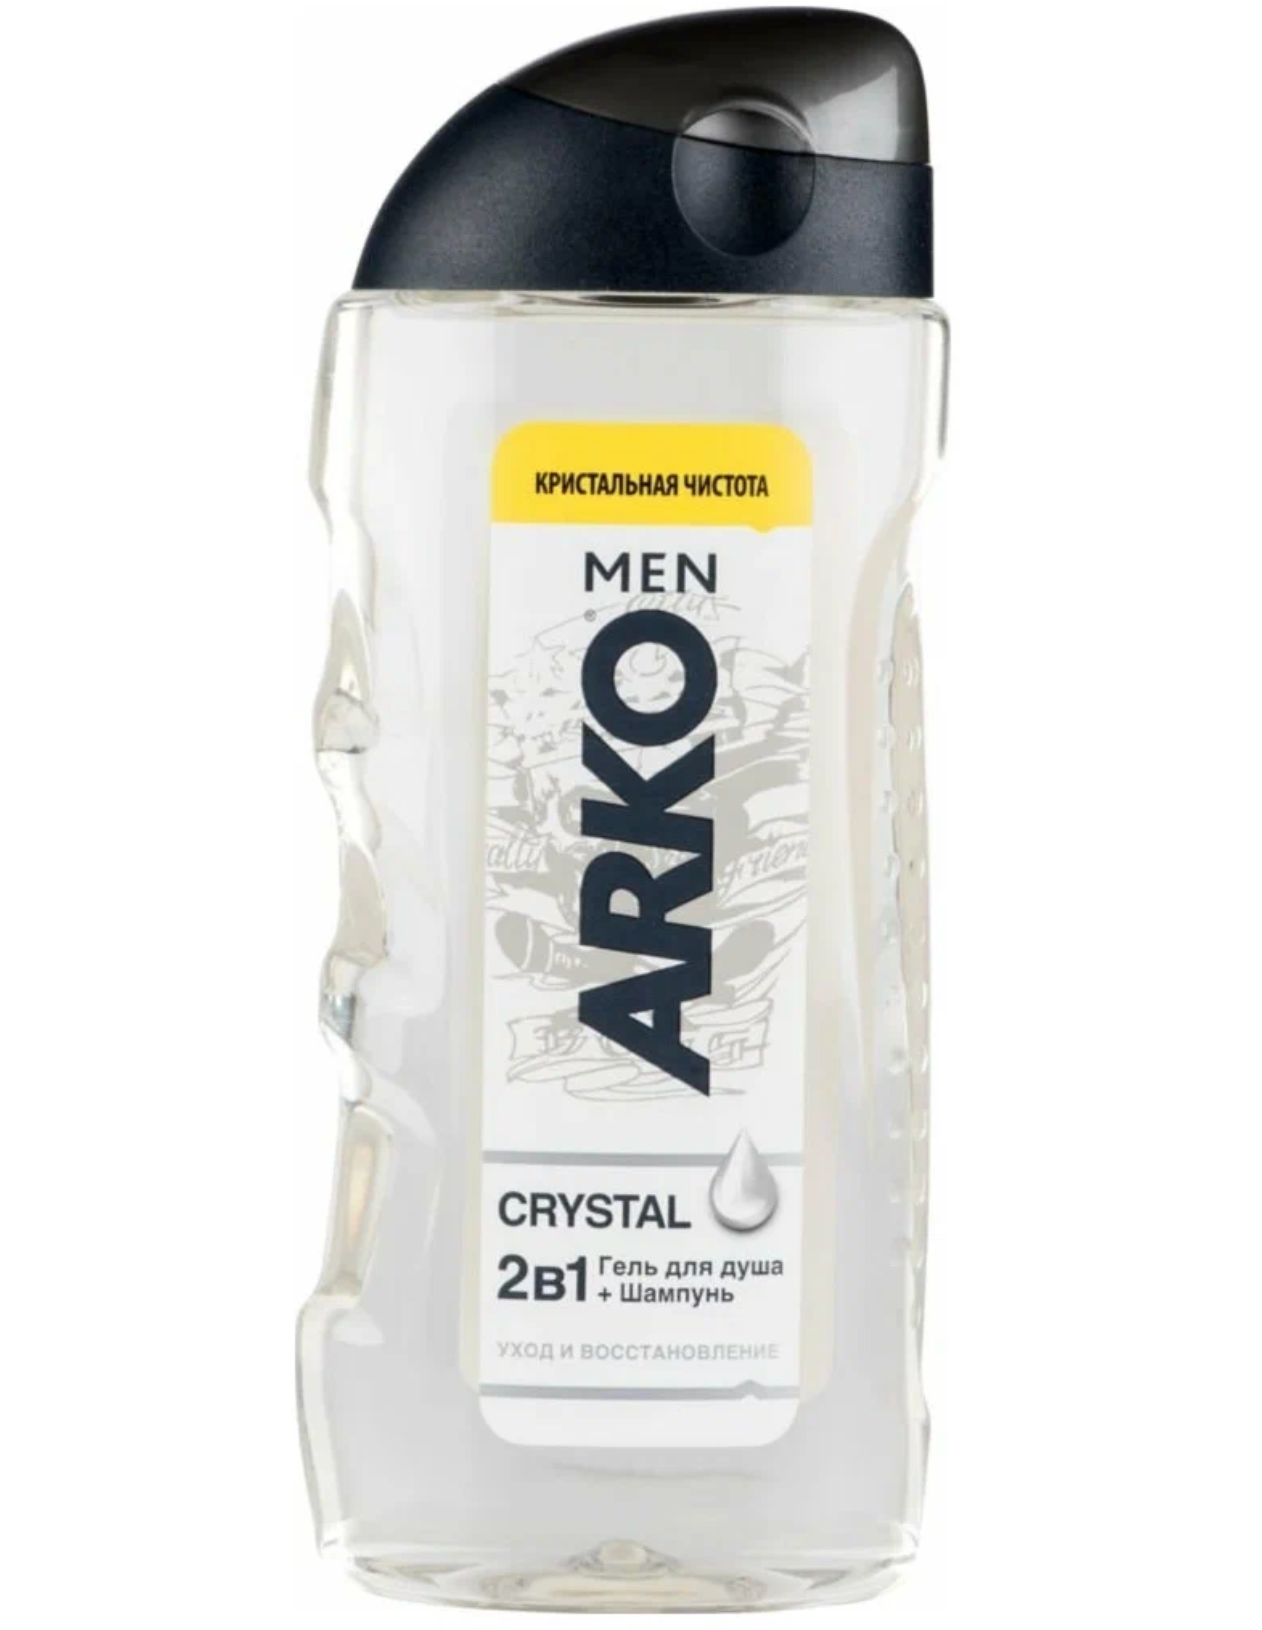 Арко / Arko Men Crystal - Гель для душа+шампунь 2в1 Уход и восстановление 260 мл